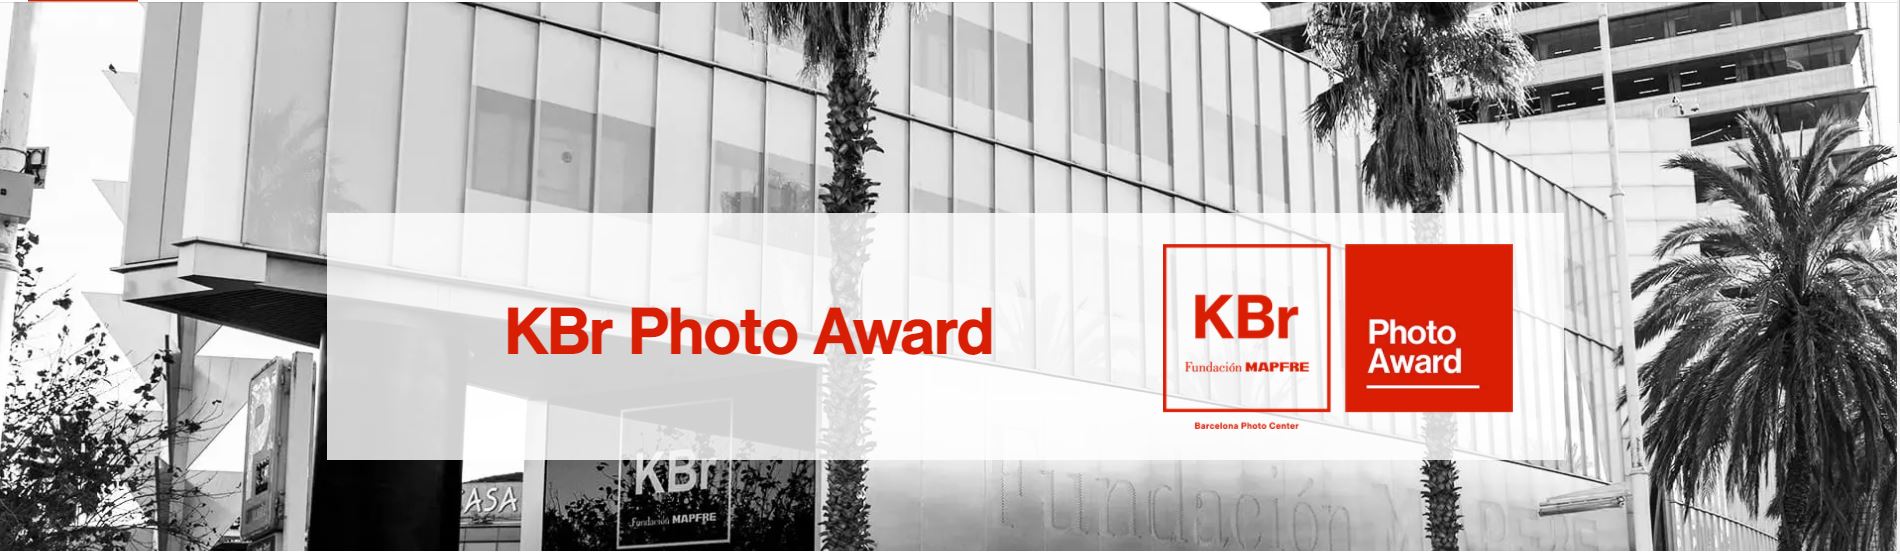 Fundación MAPFRE lanza la 1ª edición del premio de fotografía KBr Photo Award